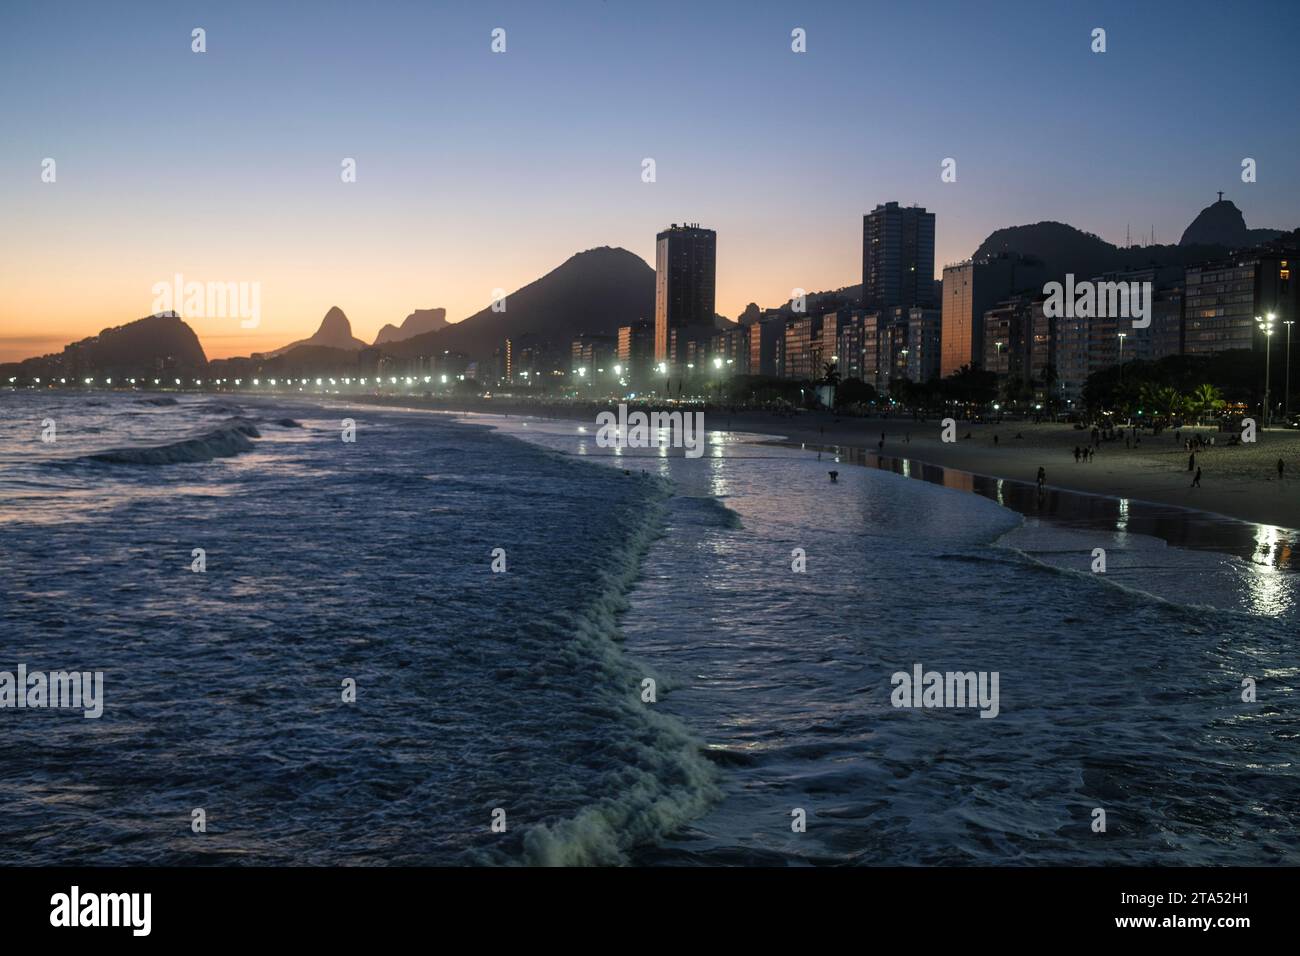 Leme et la plage de Copacabana au coucher du soleil, Rio de Janeiro, Brésil. Christ Rédempteur juste derrière les bâtiments du front de mer. Morro dois Irmãos et Pedra da Gávea à gauche en arrière-plan. Banque D'Images